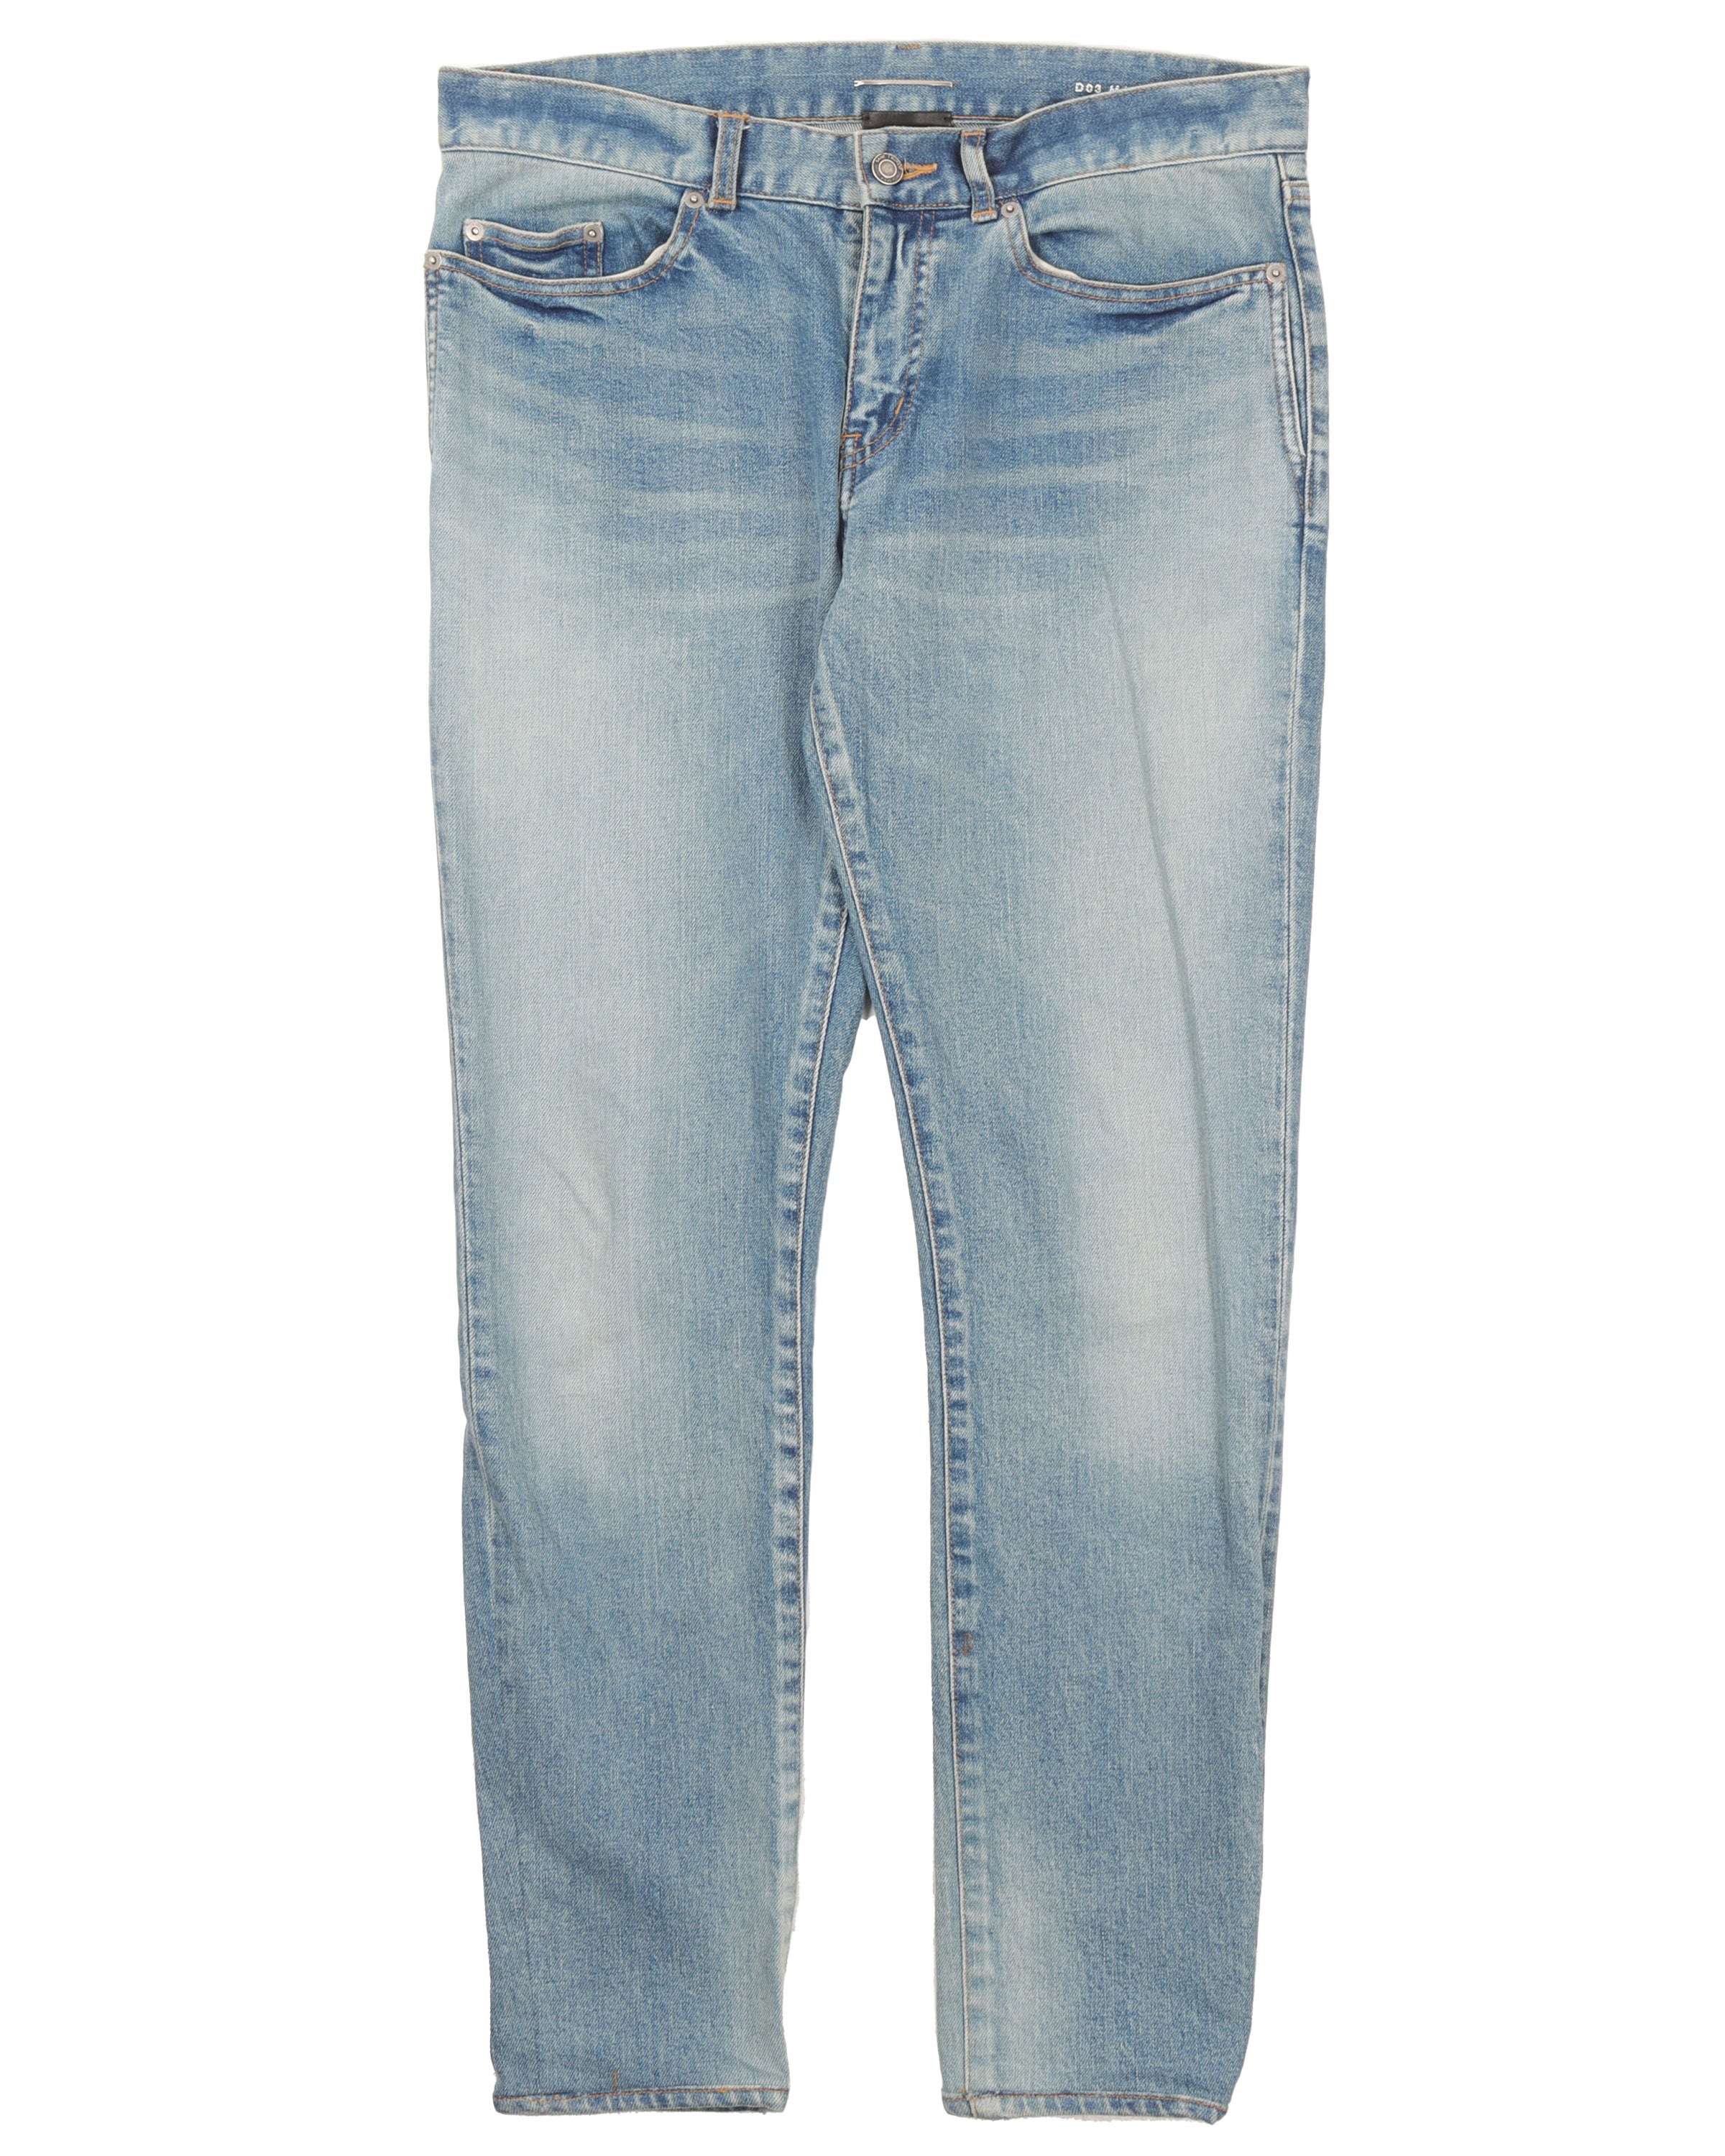 D03 Blue Jeans